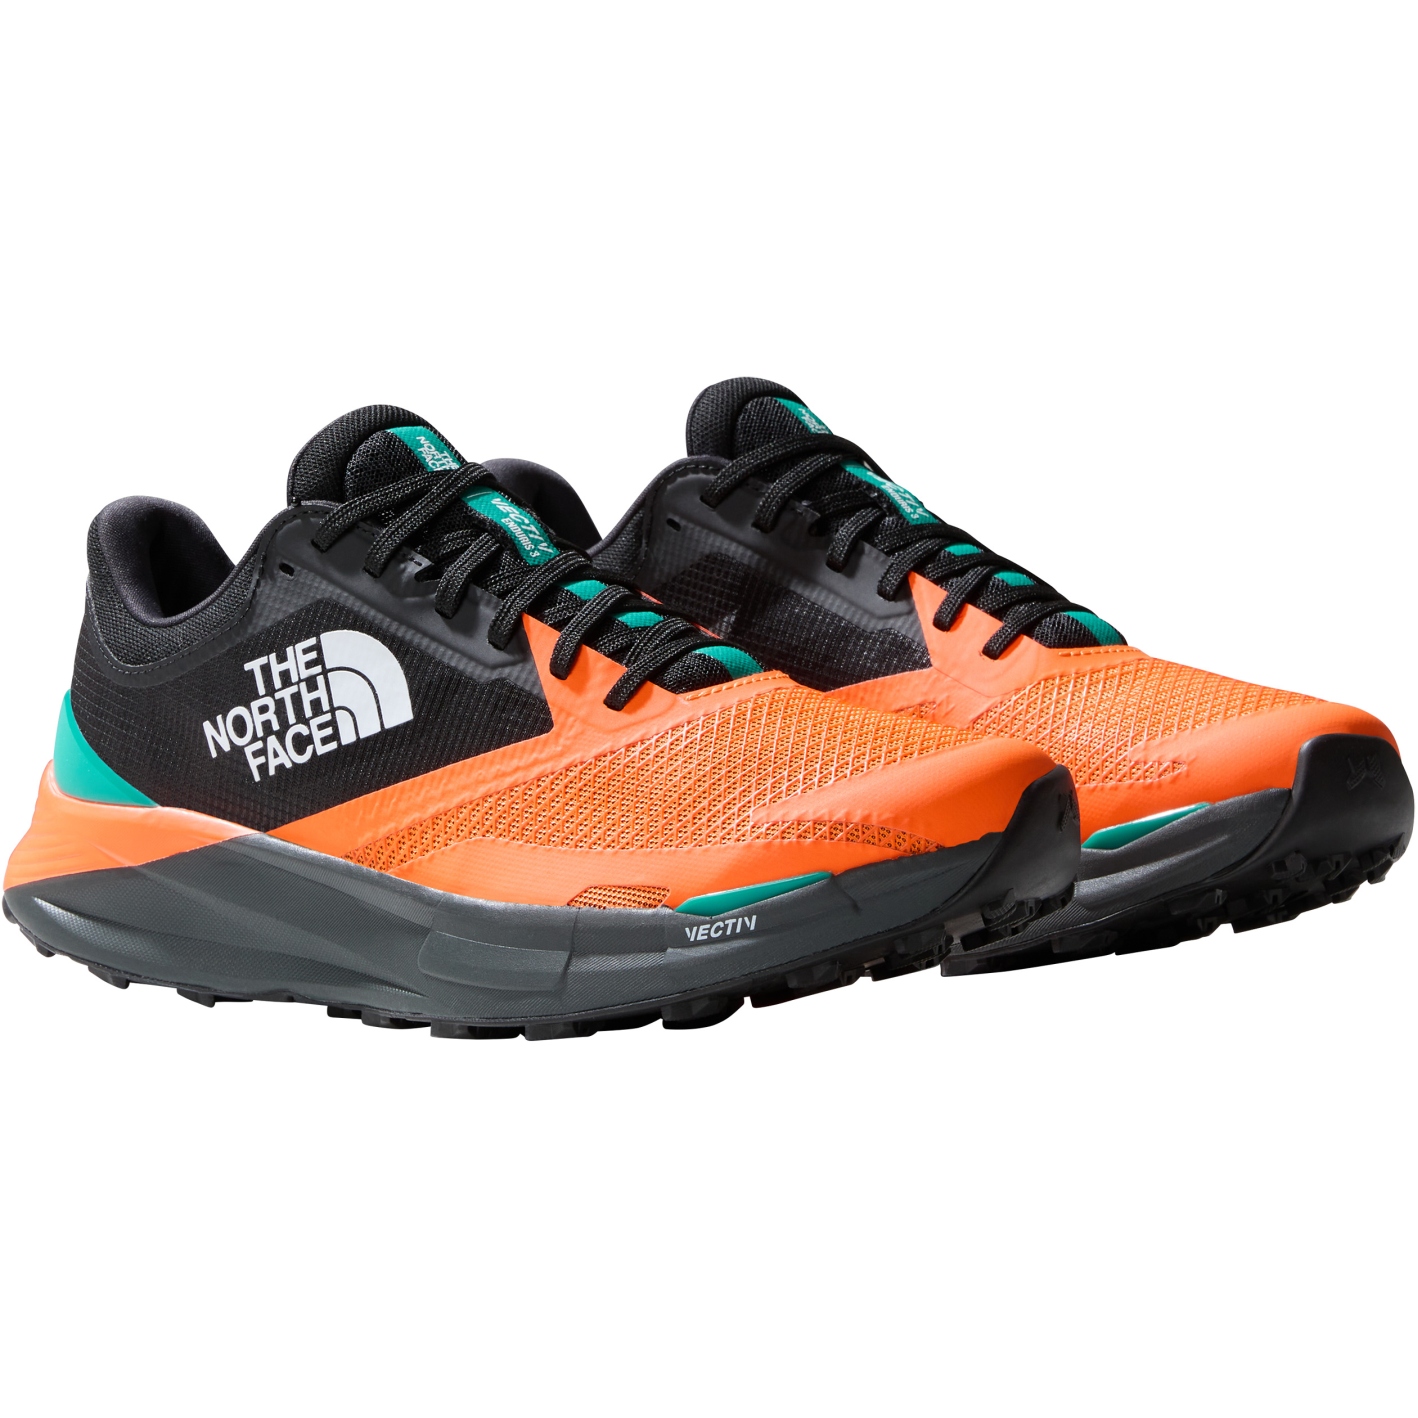 Produktbild von The North Face VECTIV™ Enduris III Trailrunning Schuhe Herren - Power Orange/TNF Black